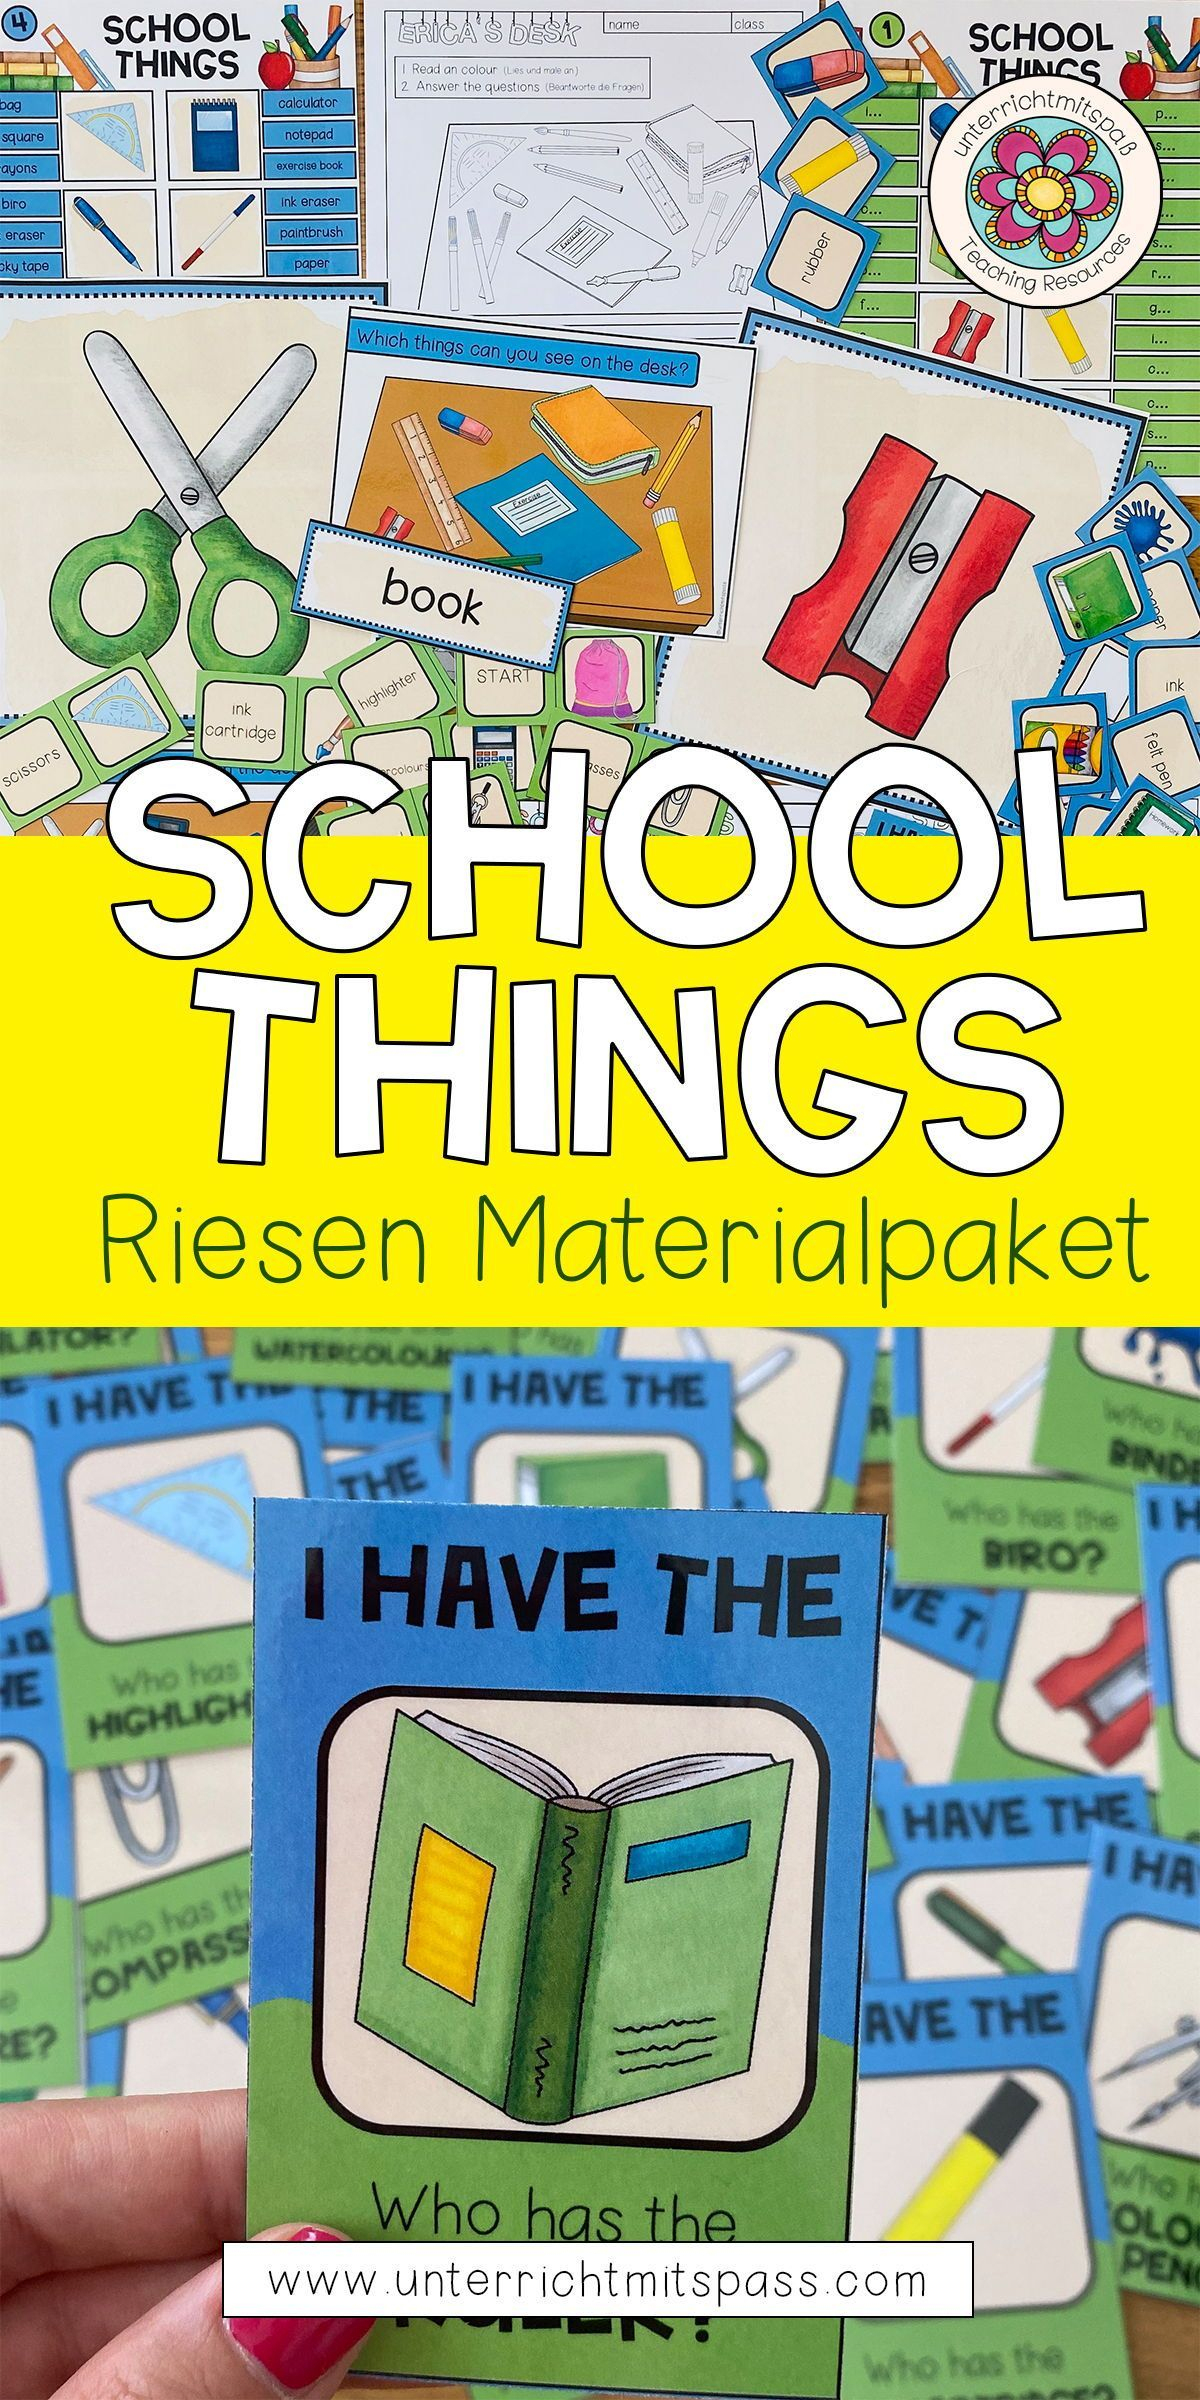 School Things - Materialpaket - Unterrichtsmaterial Im Fach Englisch In verwandt mit Level 4 Die Stadt Der Kinder Bilder